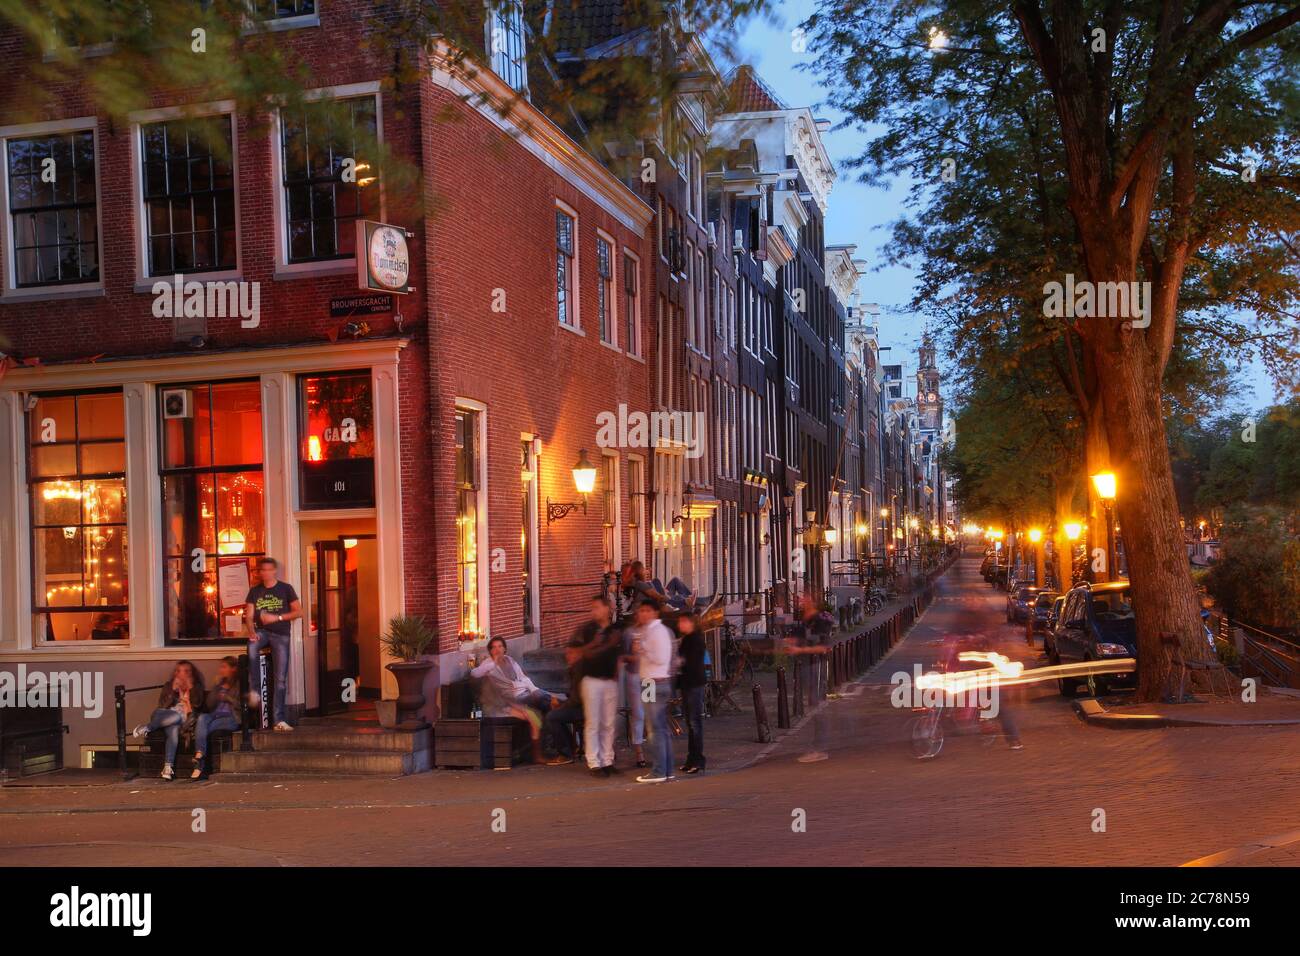 Escena nocturna a lo largo de los canales de Amsterdam, Holanda, durante el verano. La imagen muestra la vida nocturna informal típica de Amsterdam. Foto de stock